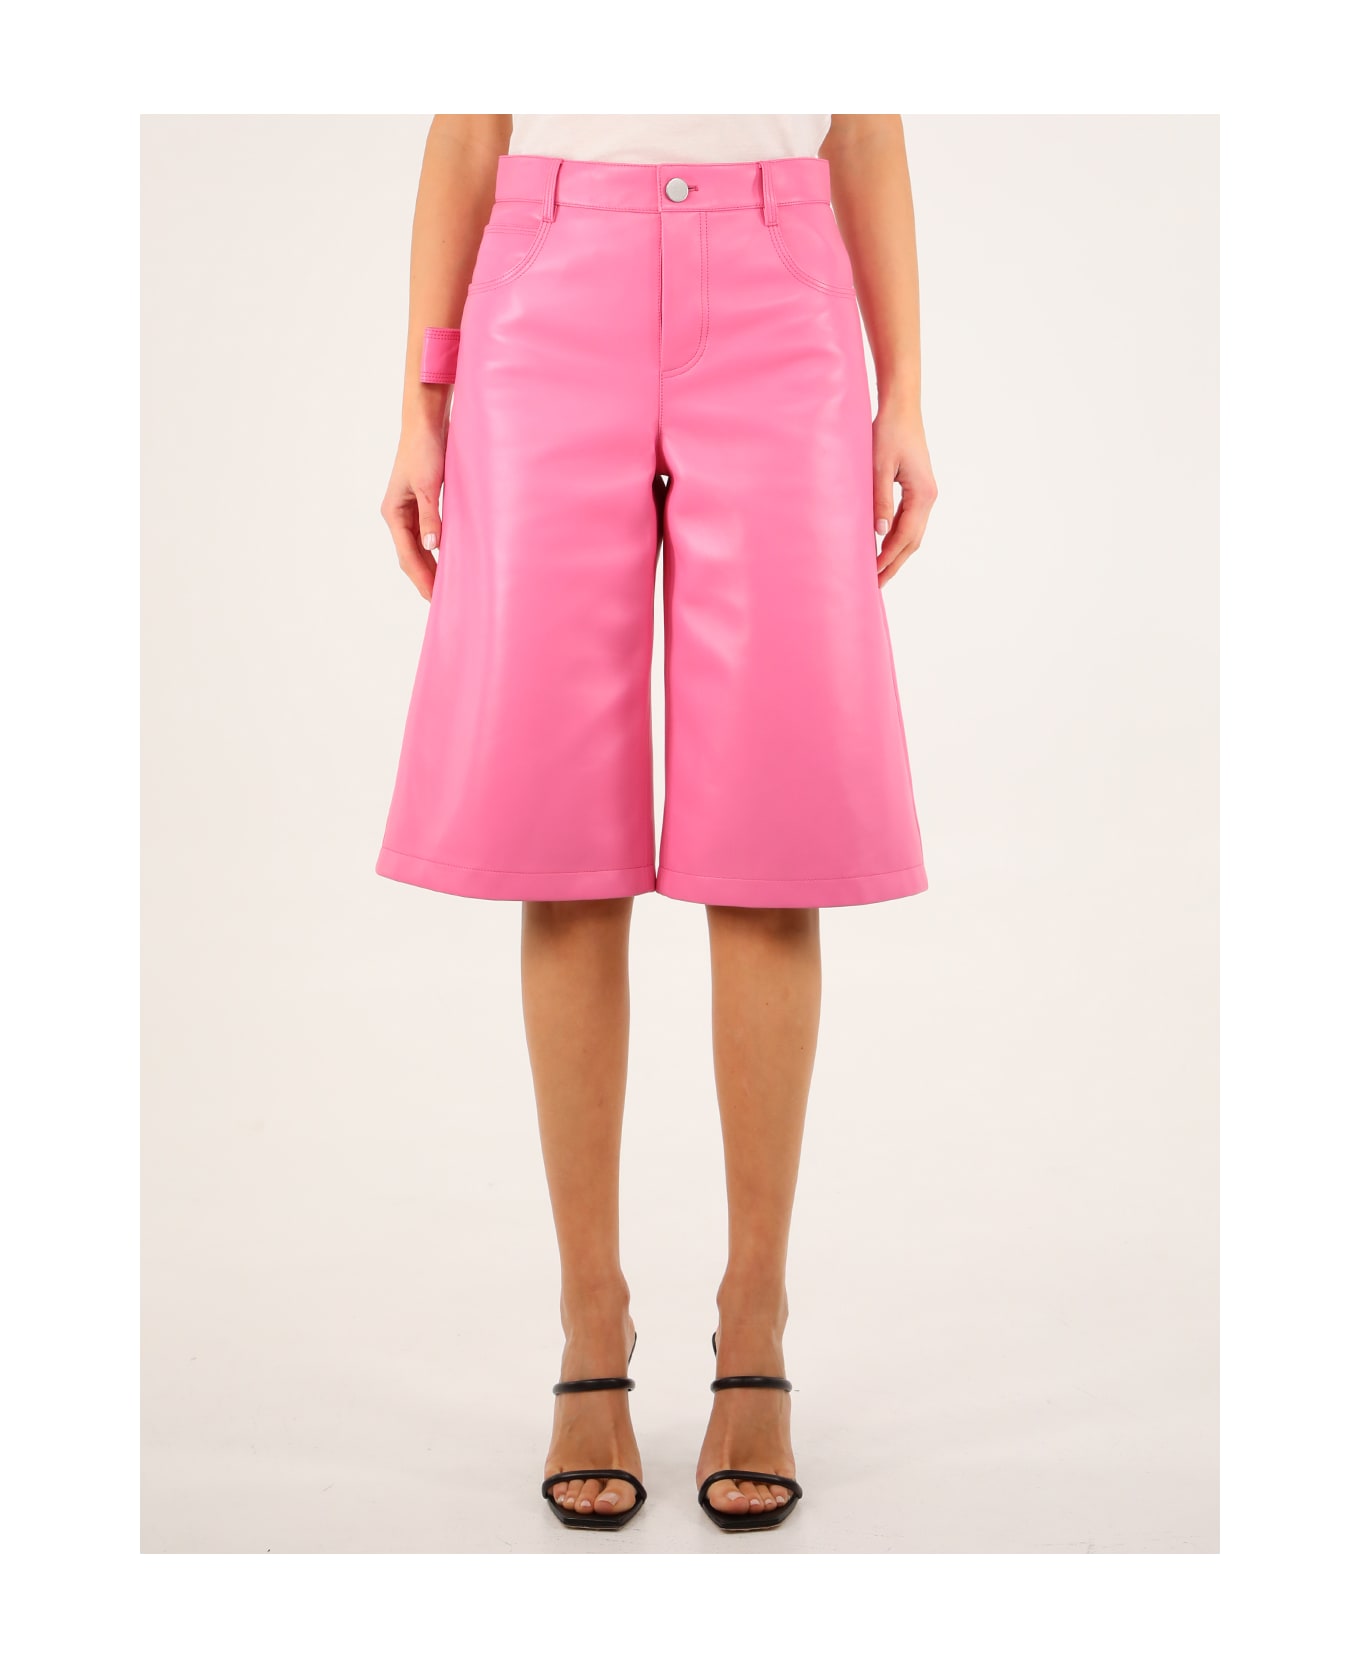 Bottega Veneta Pink Leather Bermuda Shorts - Pink